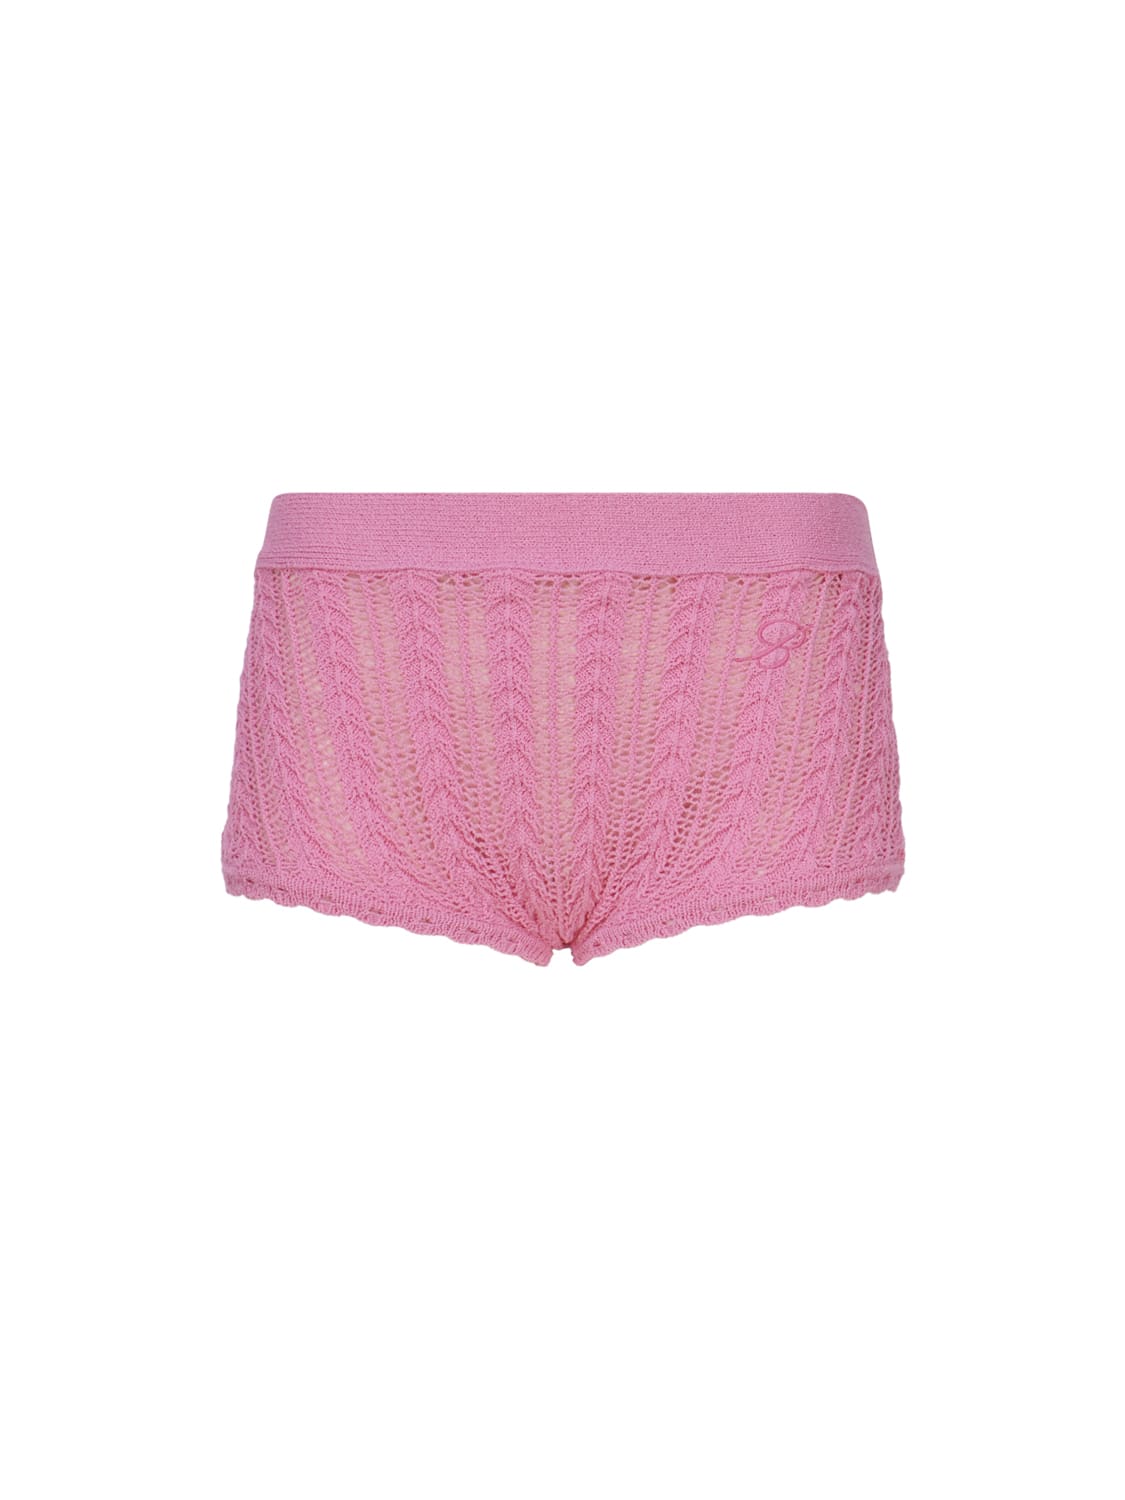 Blumarine Cotton Knit Shorts In Pink Geranio